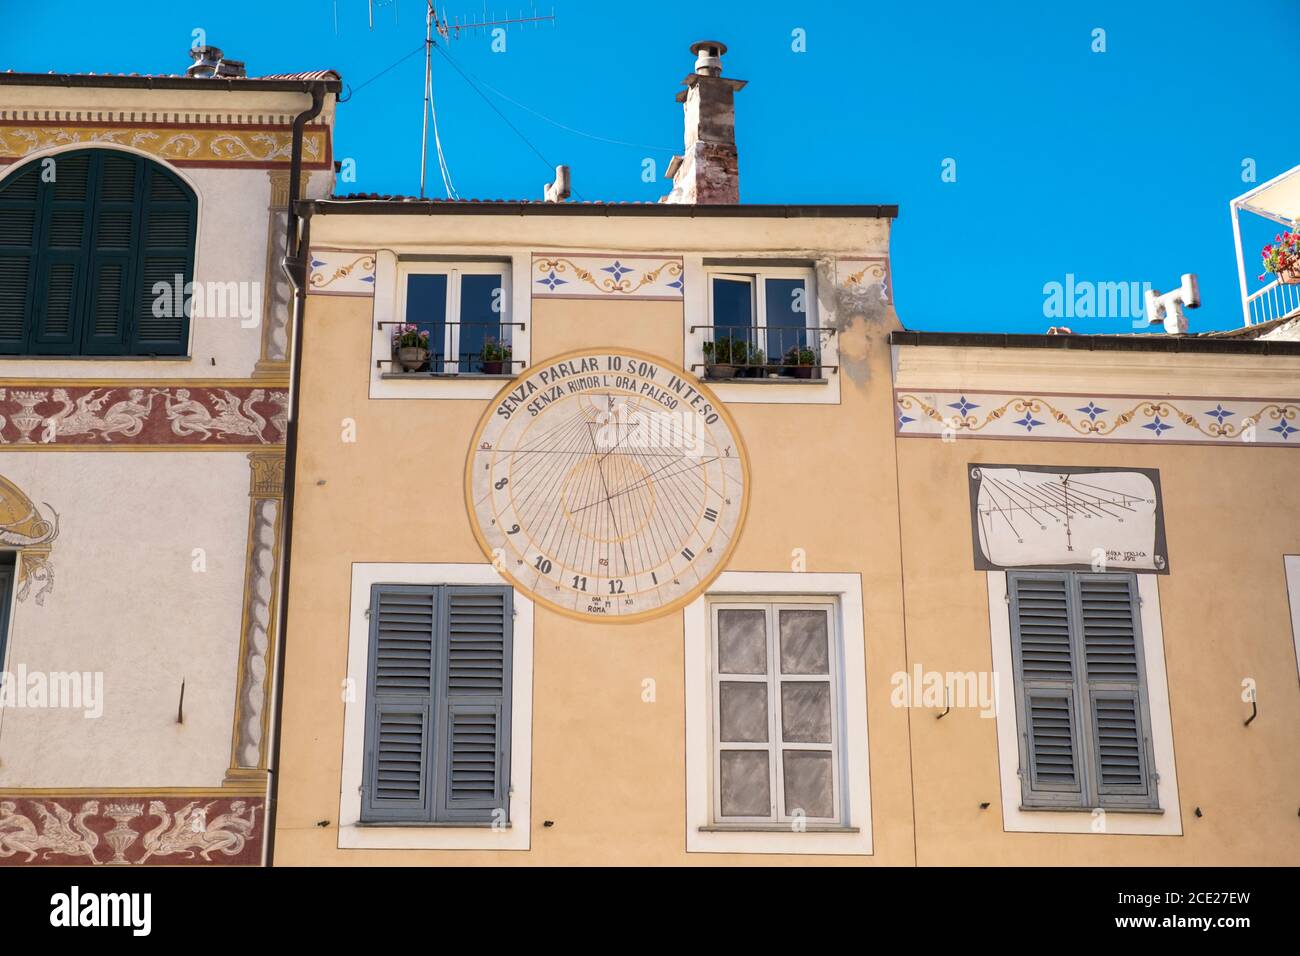 Antiguos edificios amarillos con reloj de sol en el casco antiguo de Finalborgo, Finale Ligure, Liguria, Italia Foto de stock